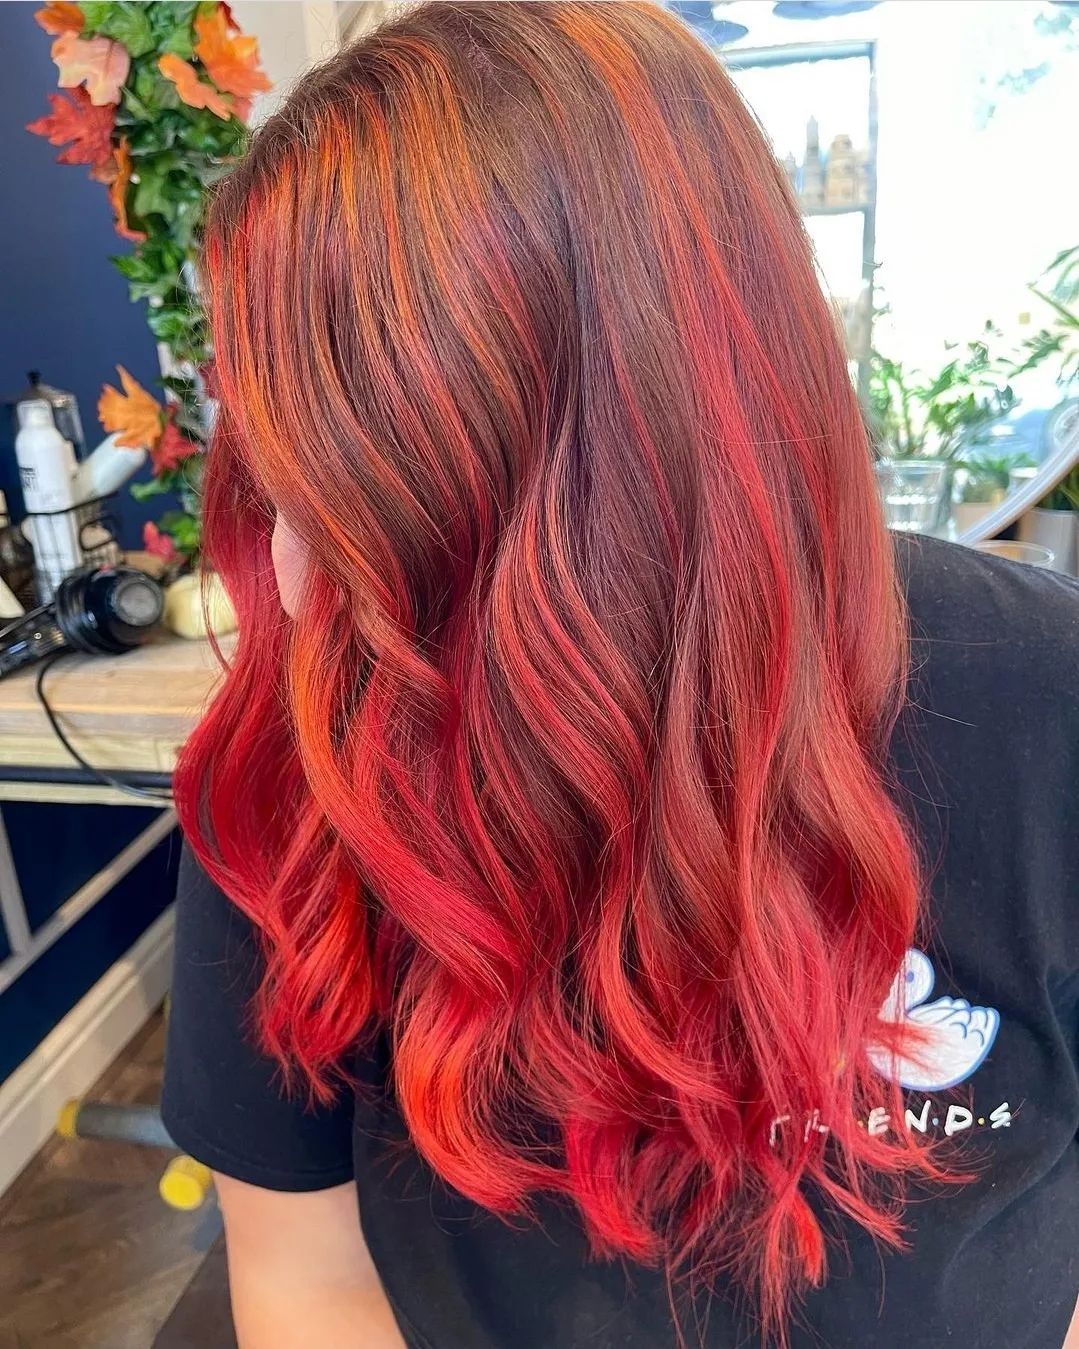 bright red hair color 184 Bright Red Hair Color | Bright red hair color for dark hair | Bright red hair color ideas Bright Red Hair Color